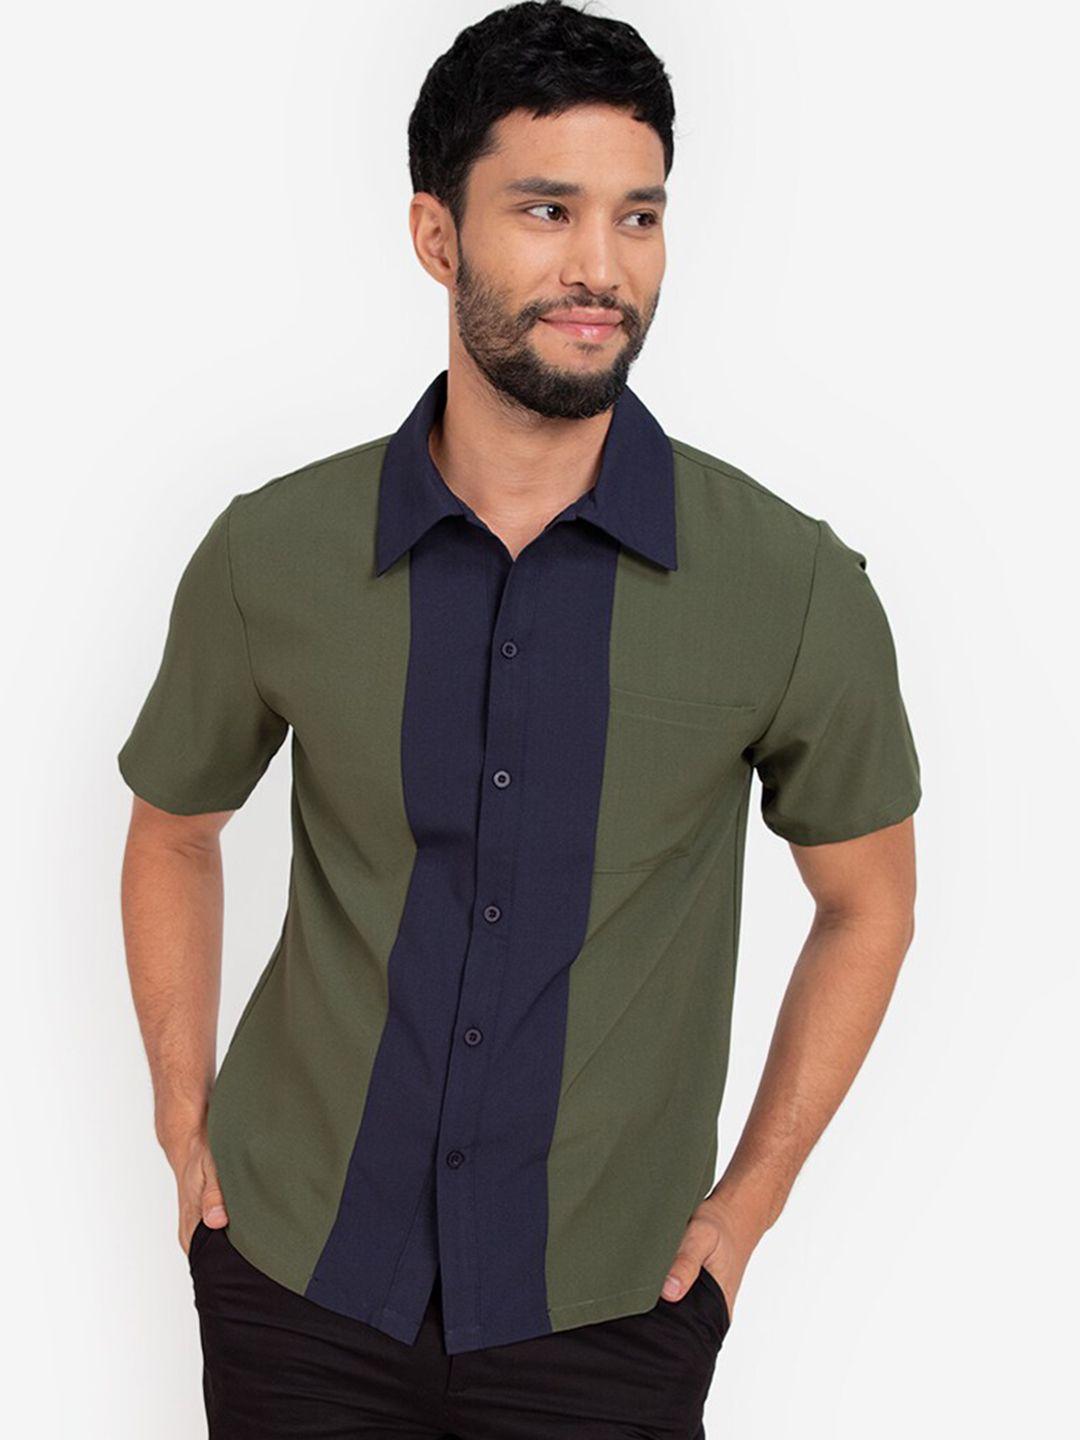 zalora basics men olive green colourblocked casual shirt